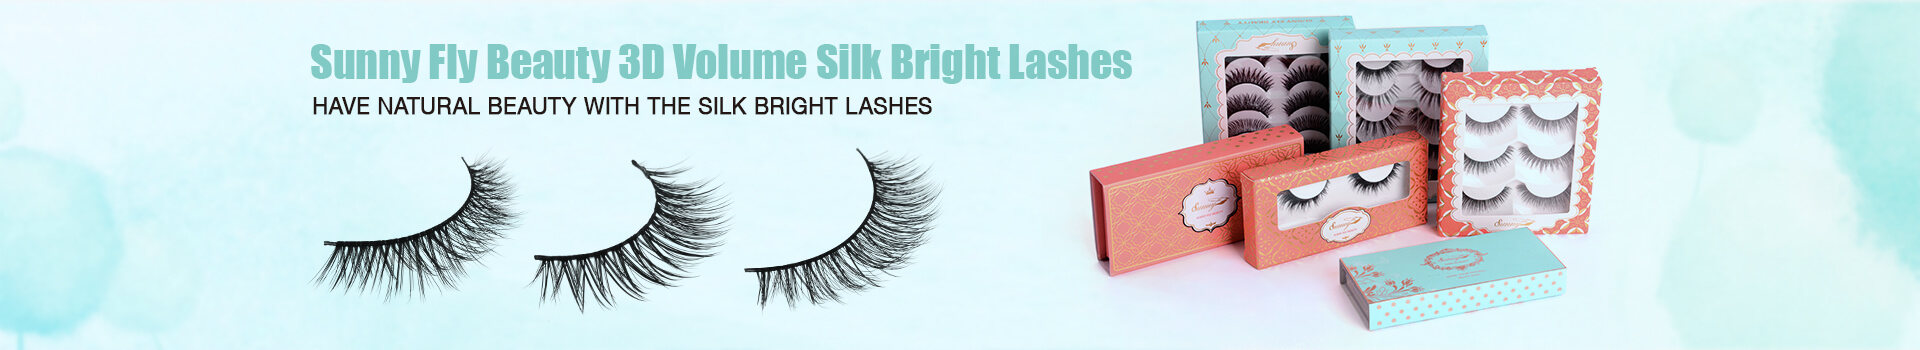 3D Volume Silk Bright Eyelashes